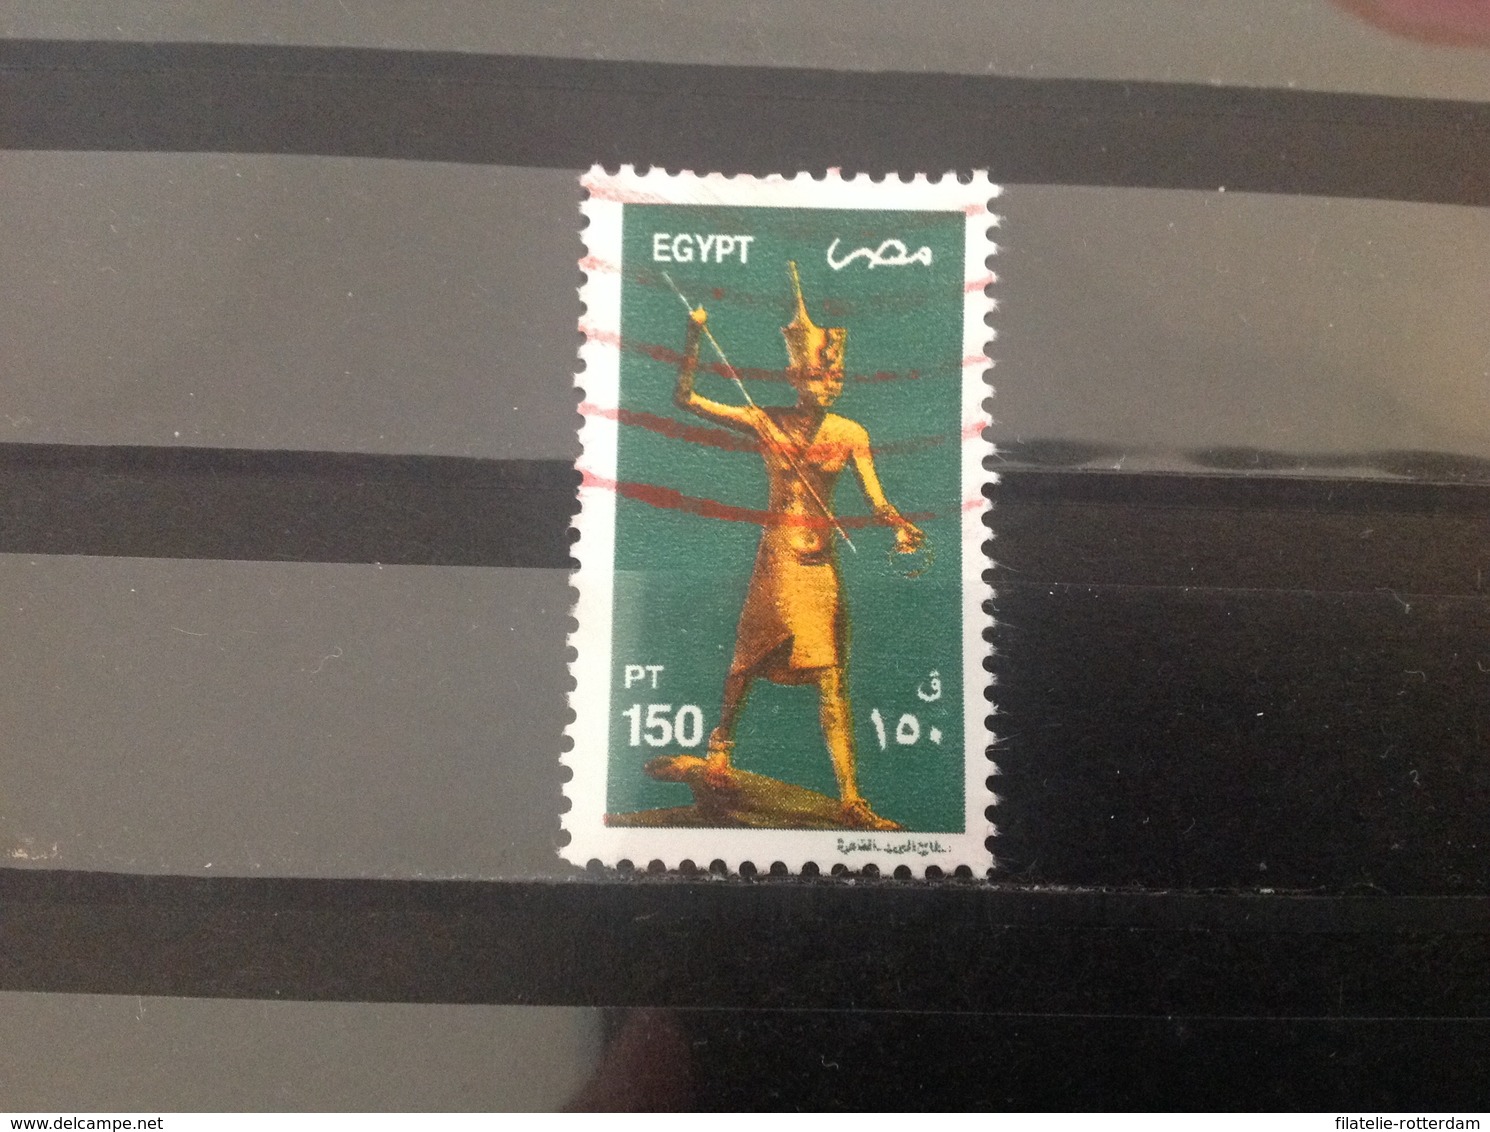 Egypte / Egypt - Toetanchamon (150) 2002 - Oblitérés